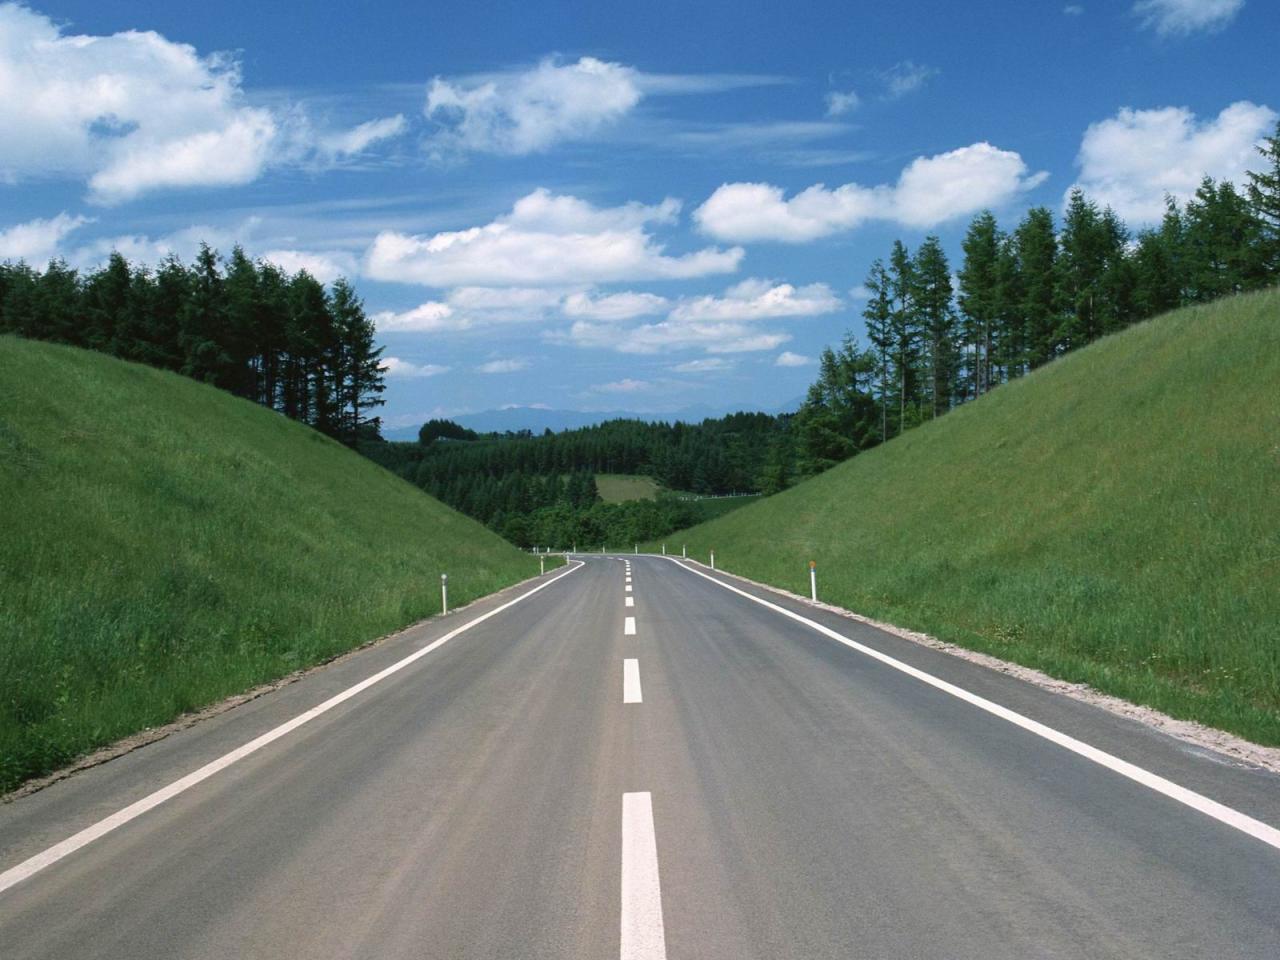 Toll roads to appear in Azerbaijan